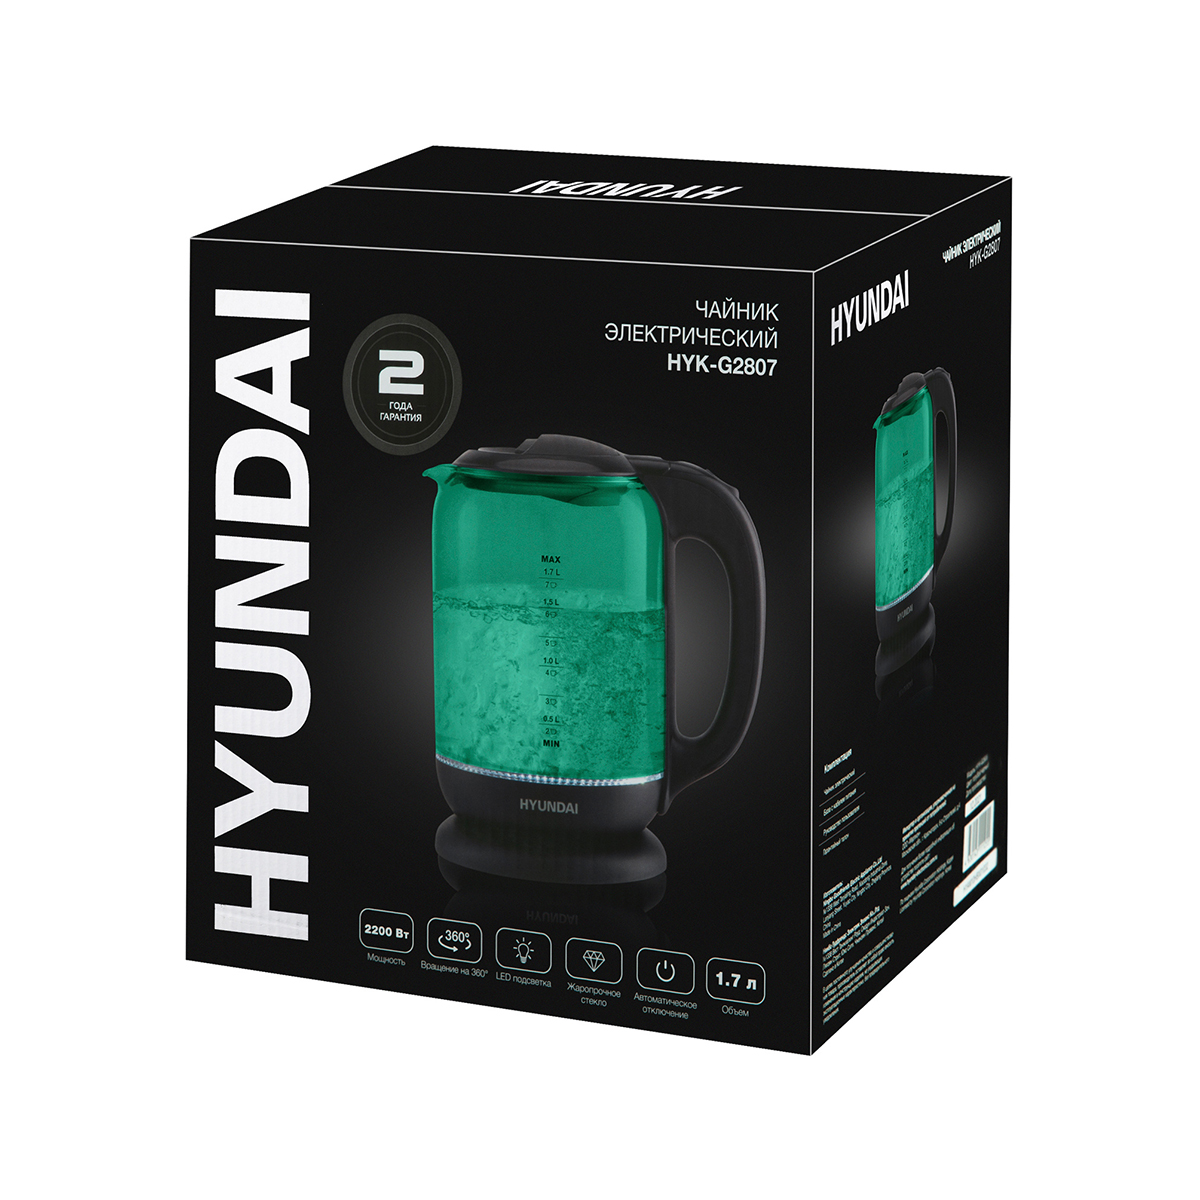 Чайник электр. hyk-g2807 1,8 л стекло (1/6) "hyundai"